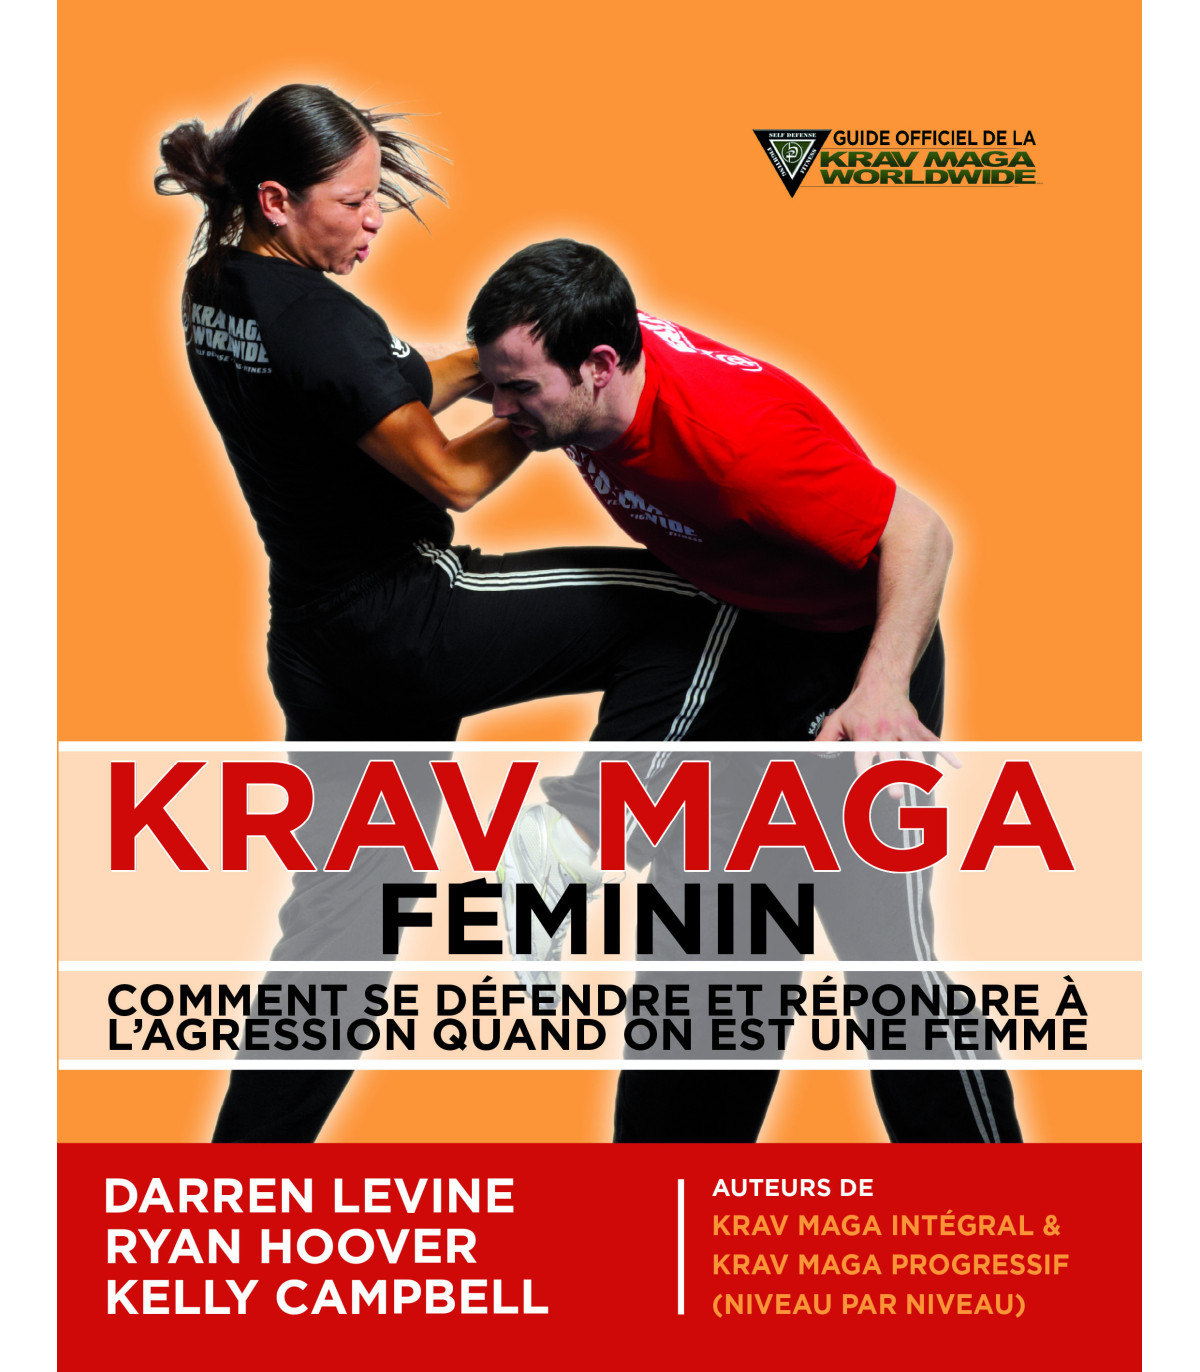 Self défense avec l'association Krav Maga Women Protect - dimanche